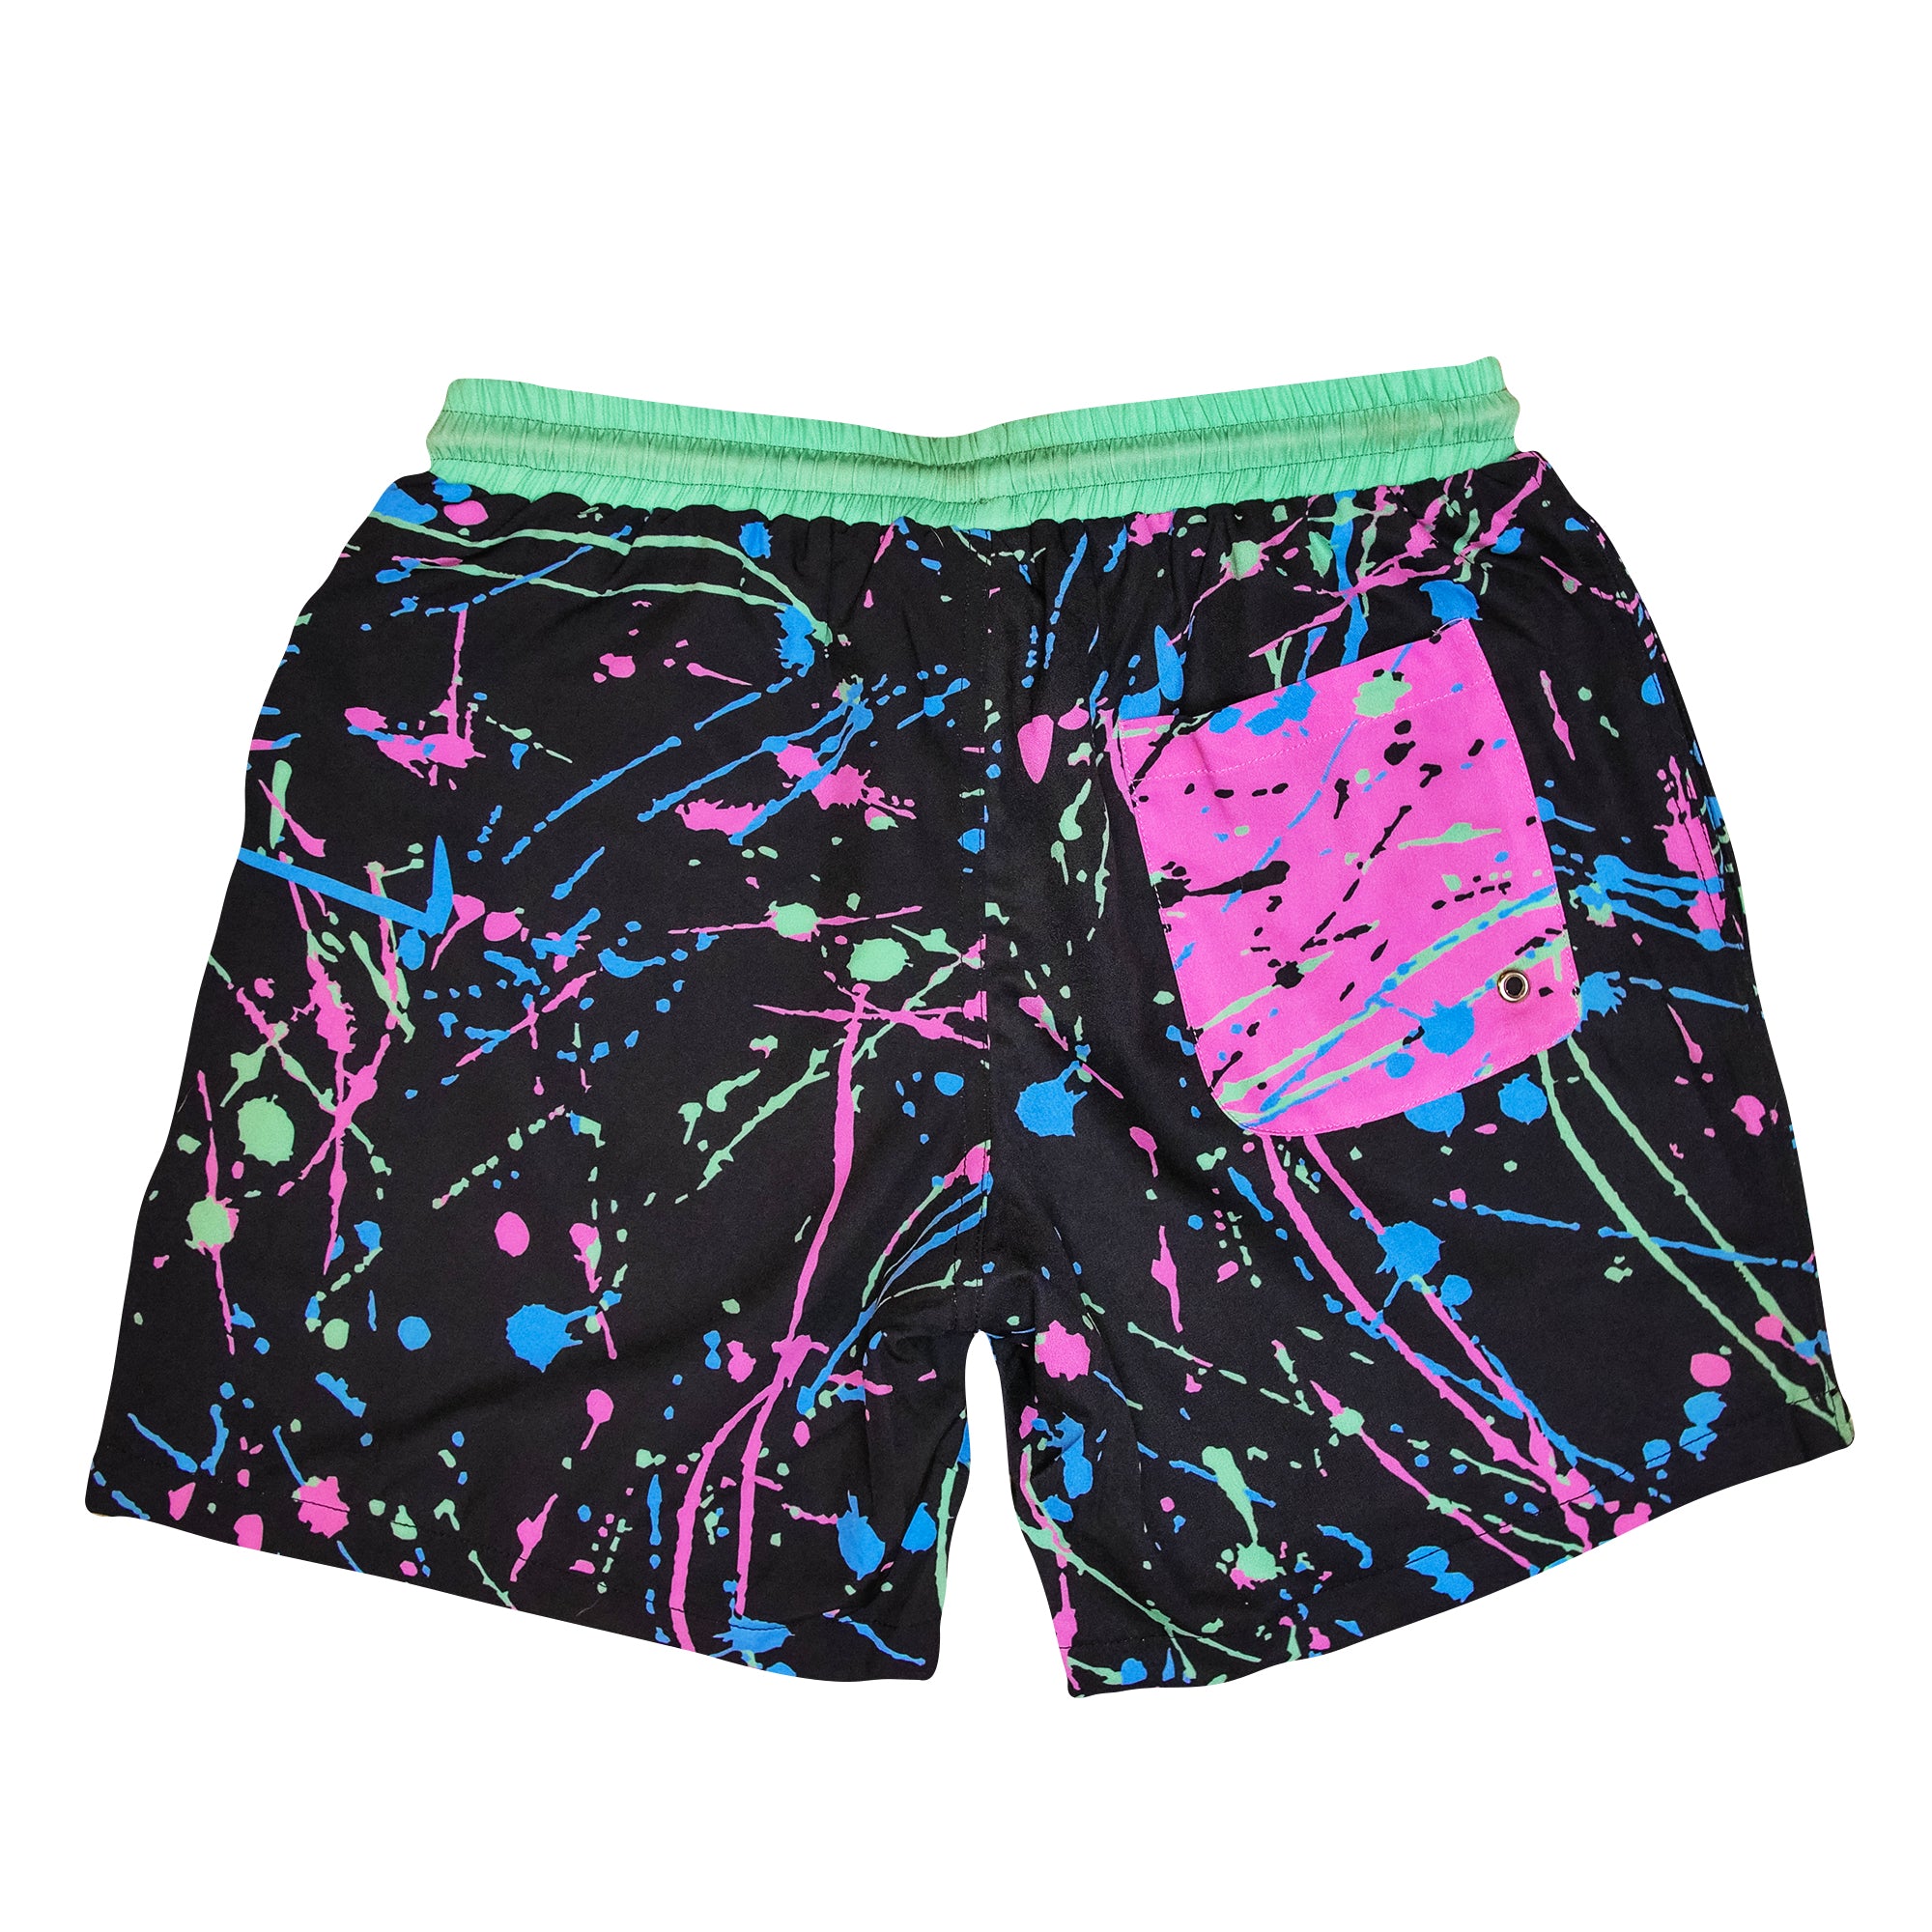 90s Splatter Vintage Retro Swim Shorts. Splatter design pink blue black green custom 80s design. B Fresh Gear